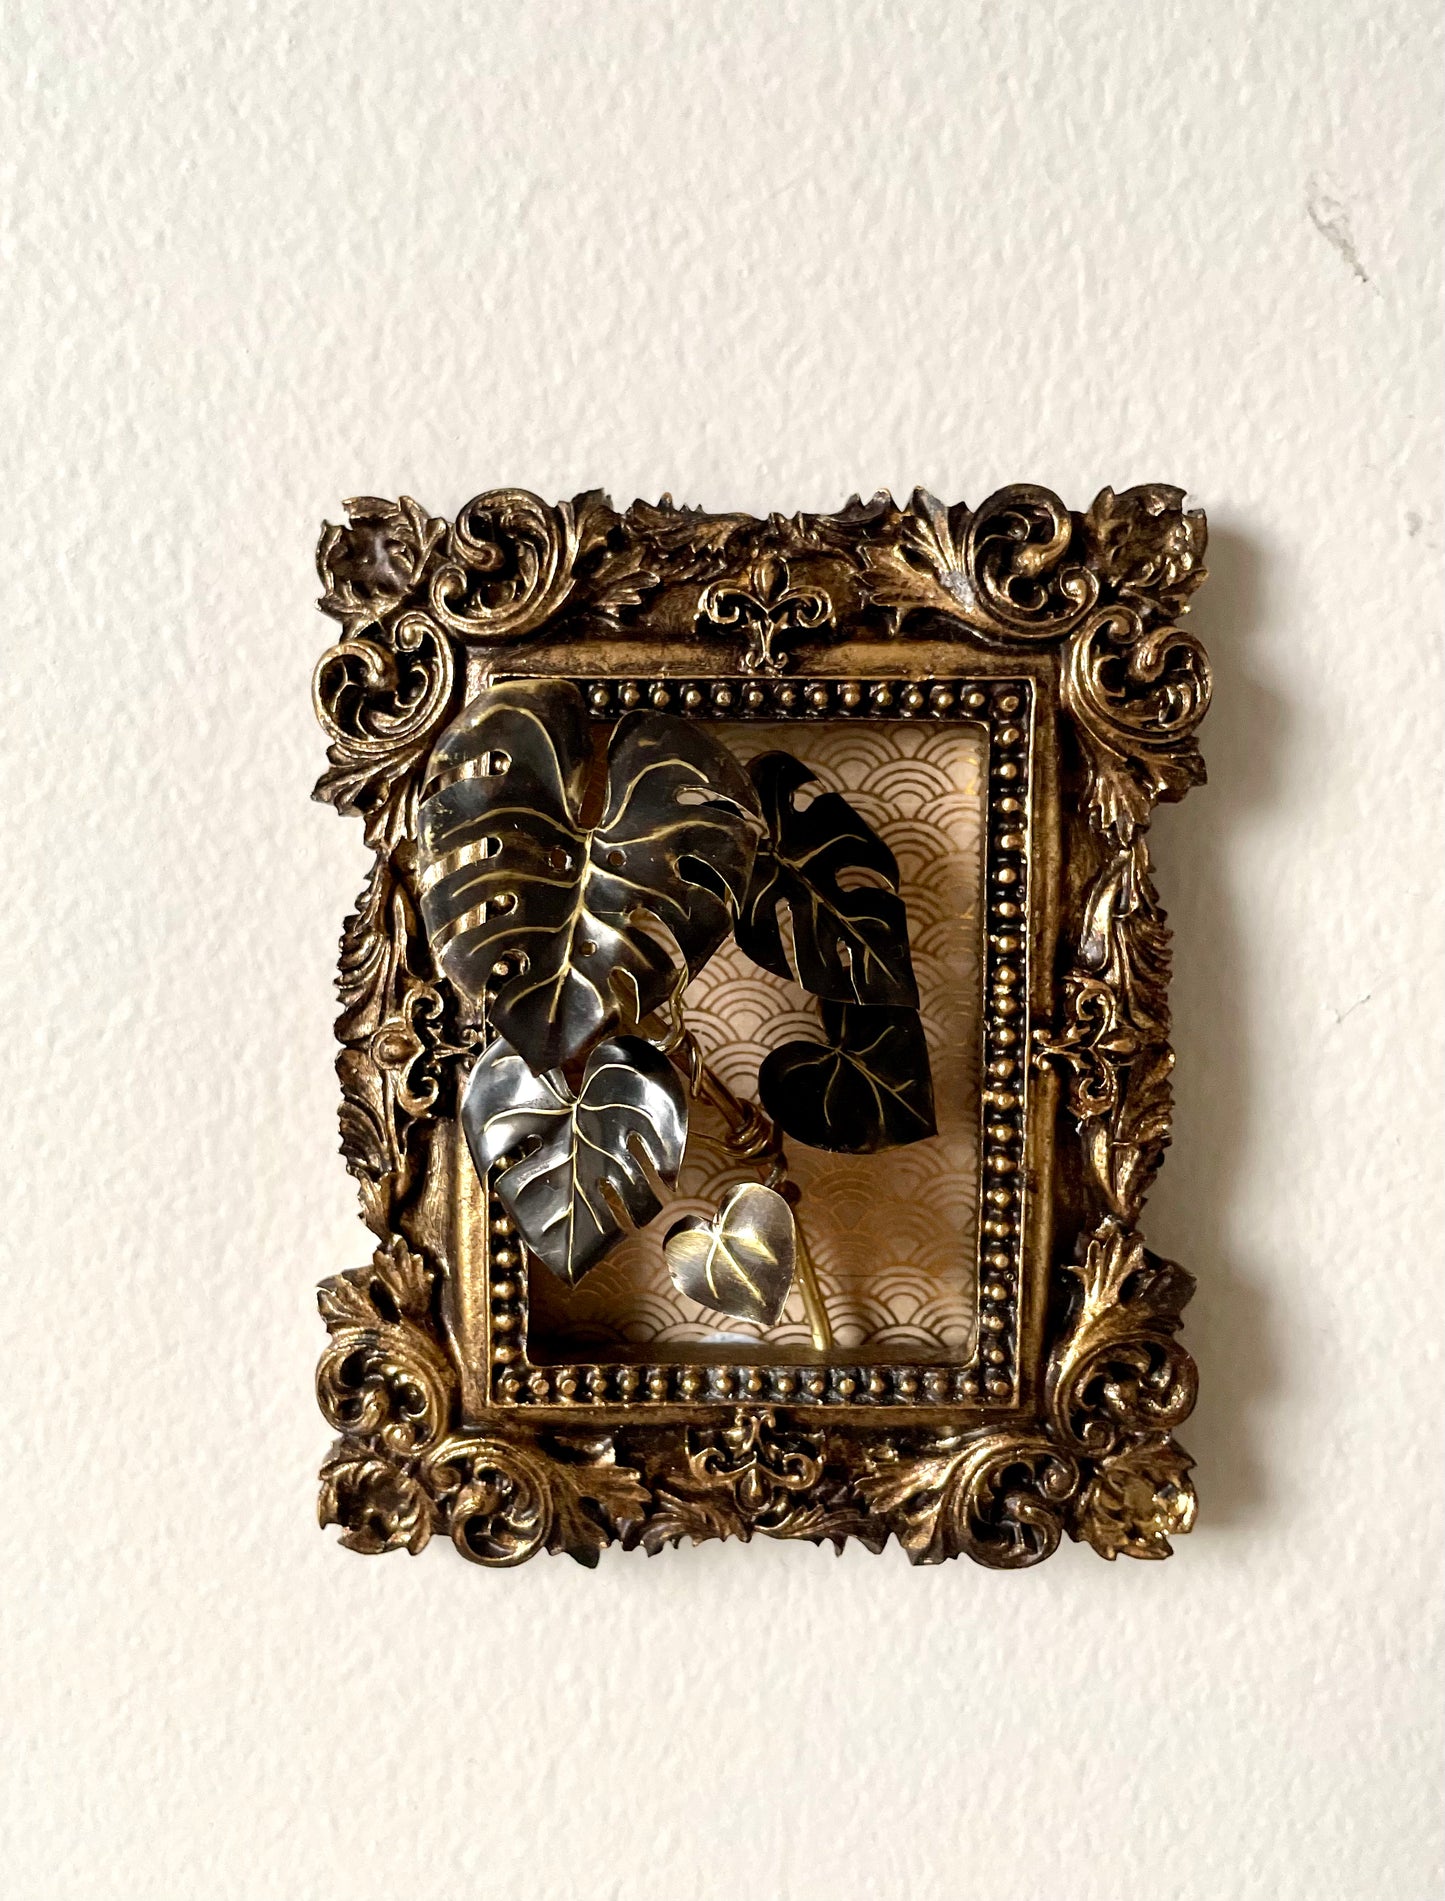 Miniature Brass Monstera deliciosa Framed